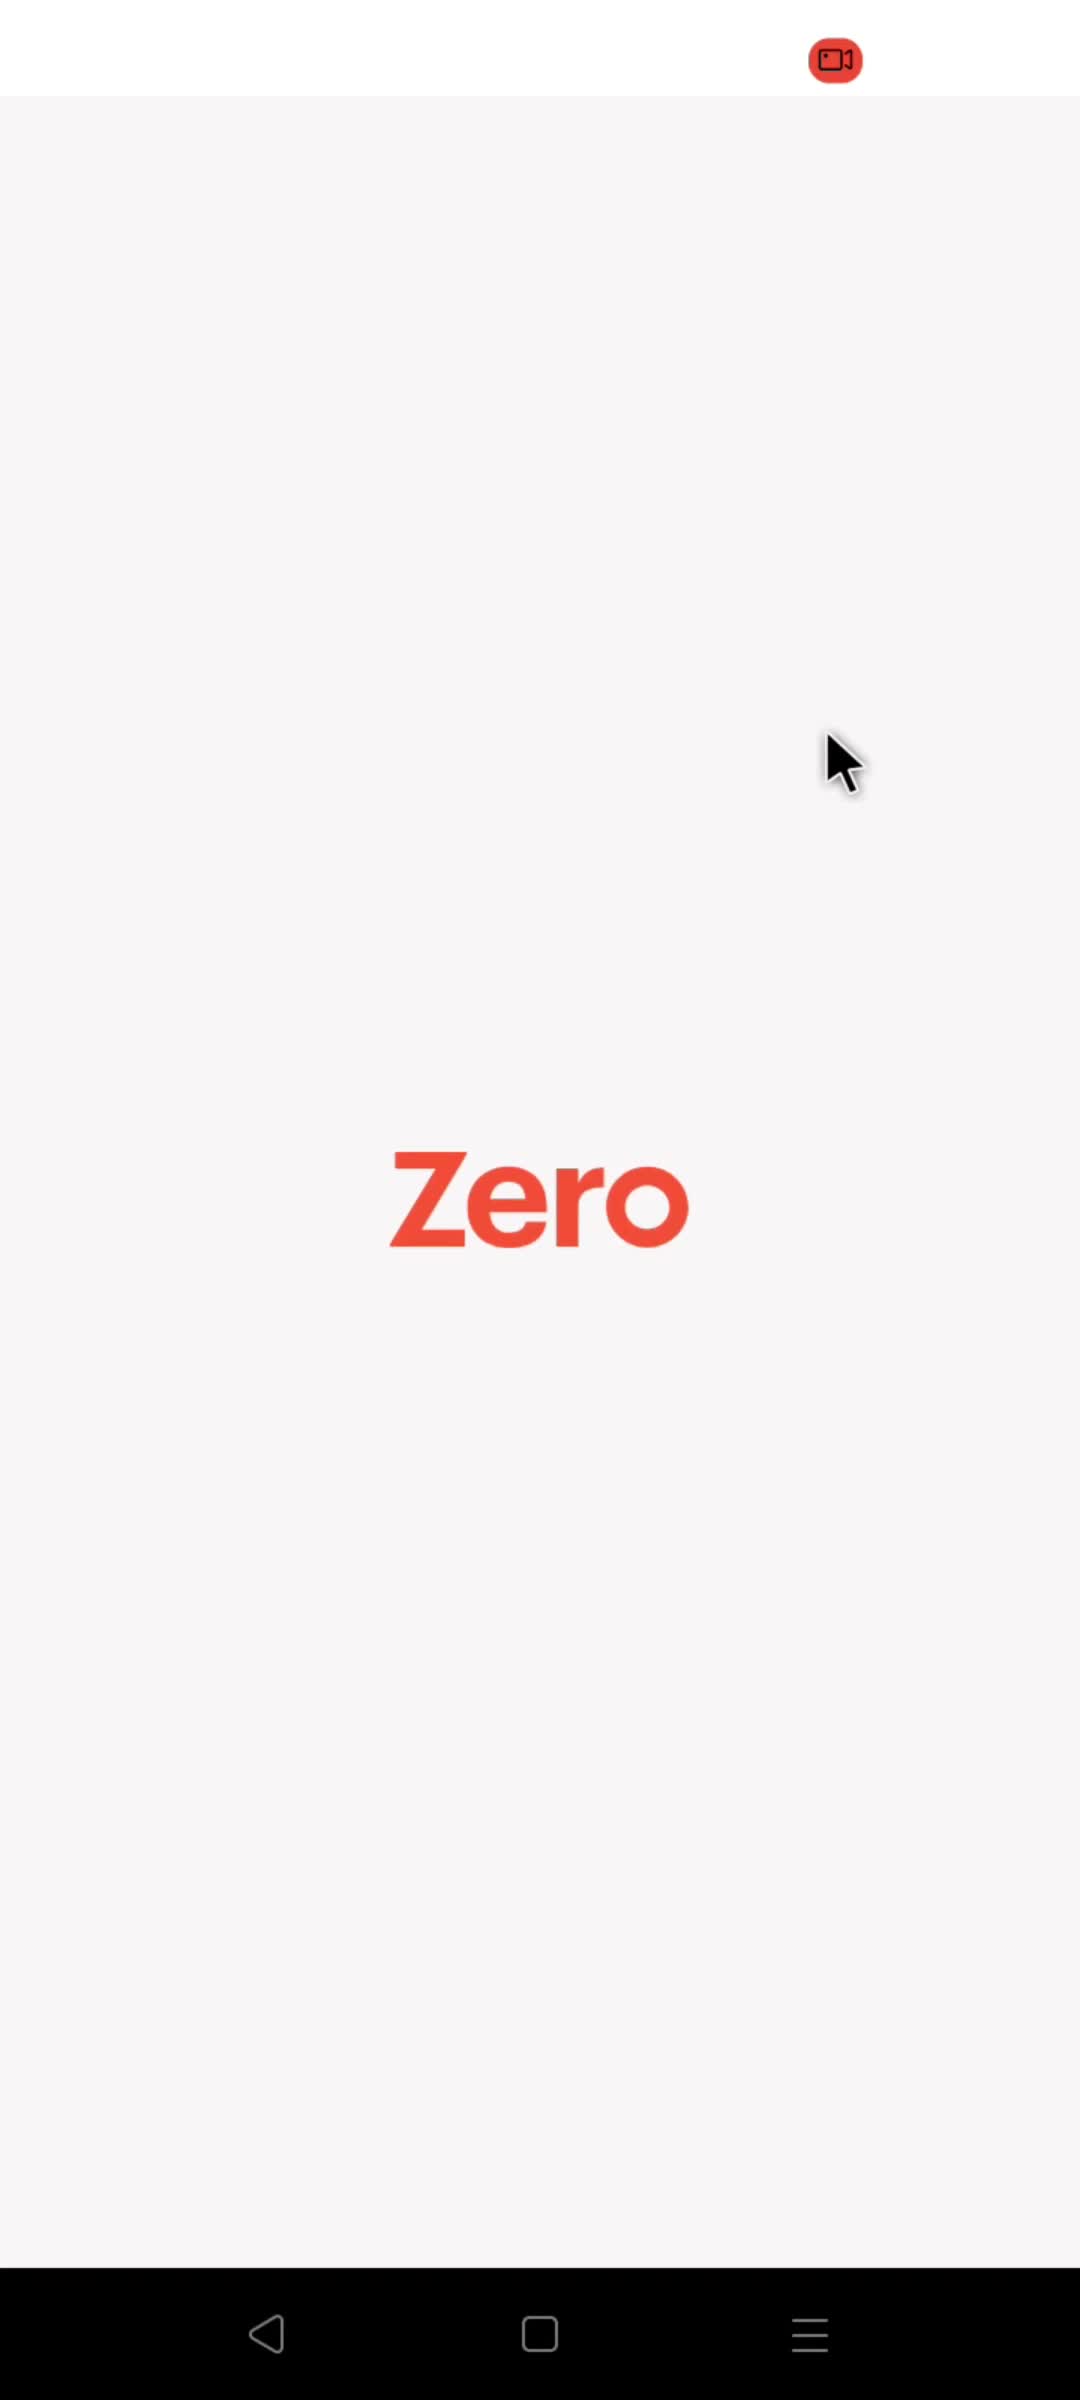 Zero splash screen screenshot